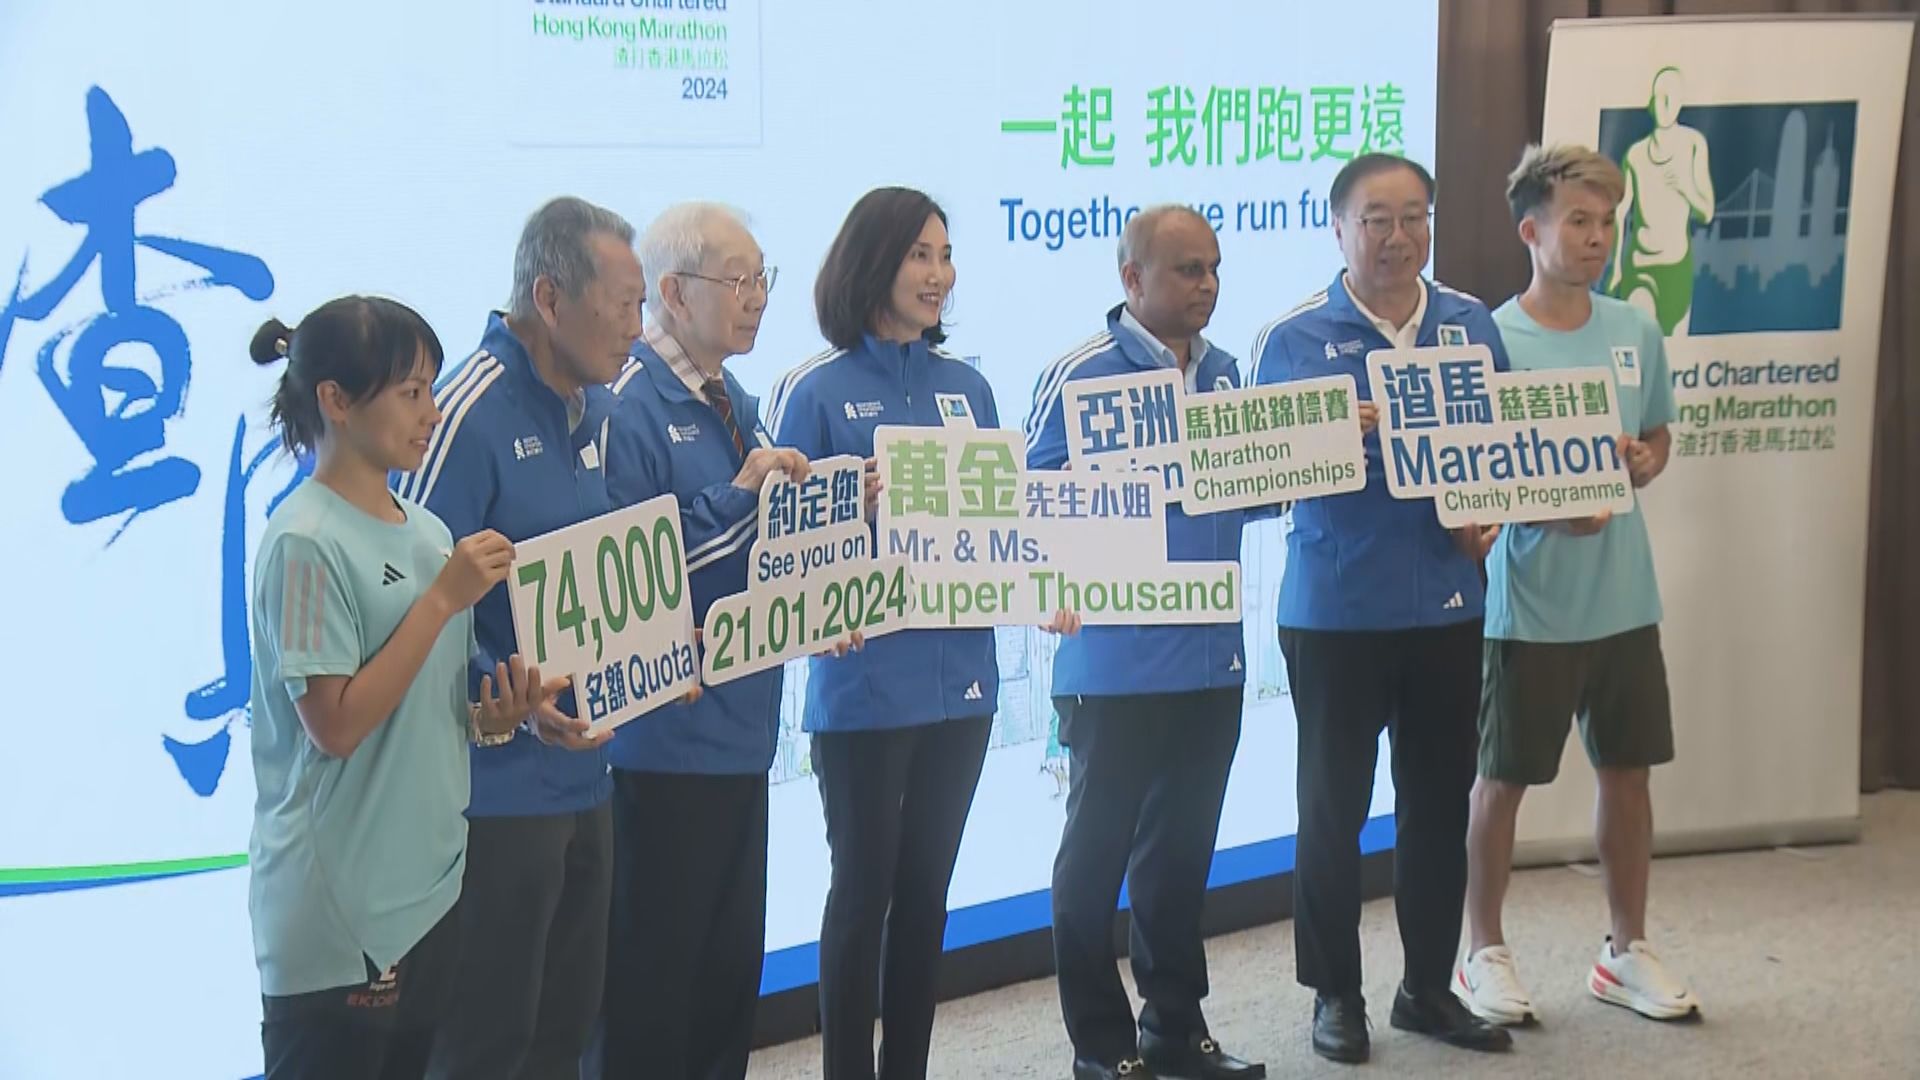 香港馬拉松明年1月21日舉行 設7.4萬個名額